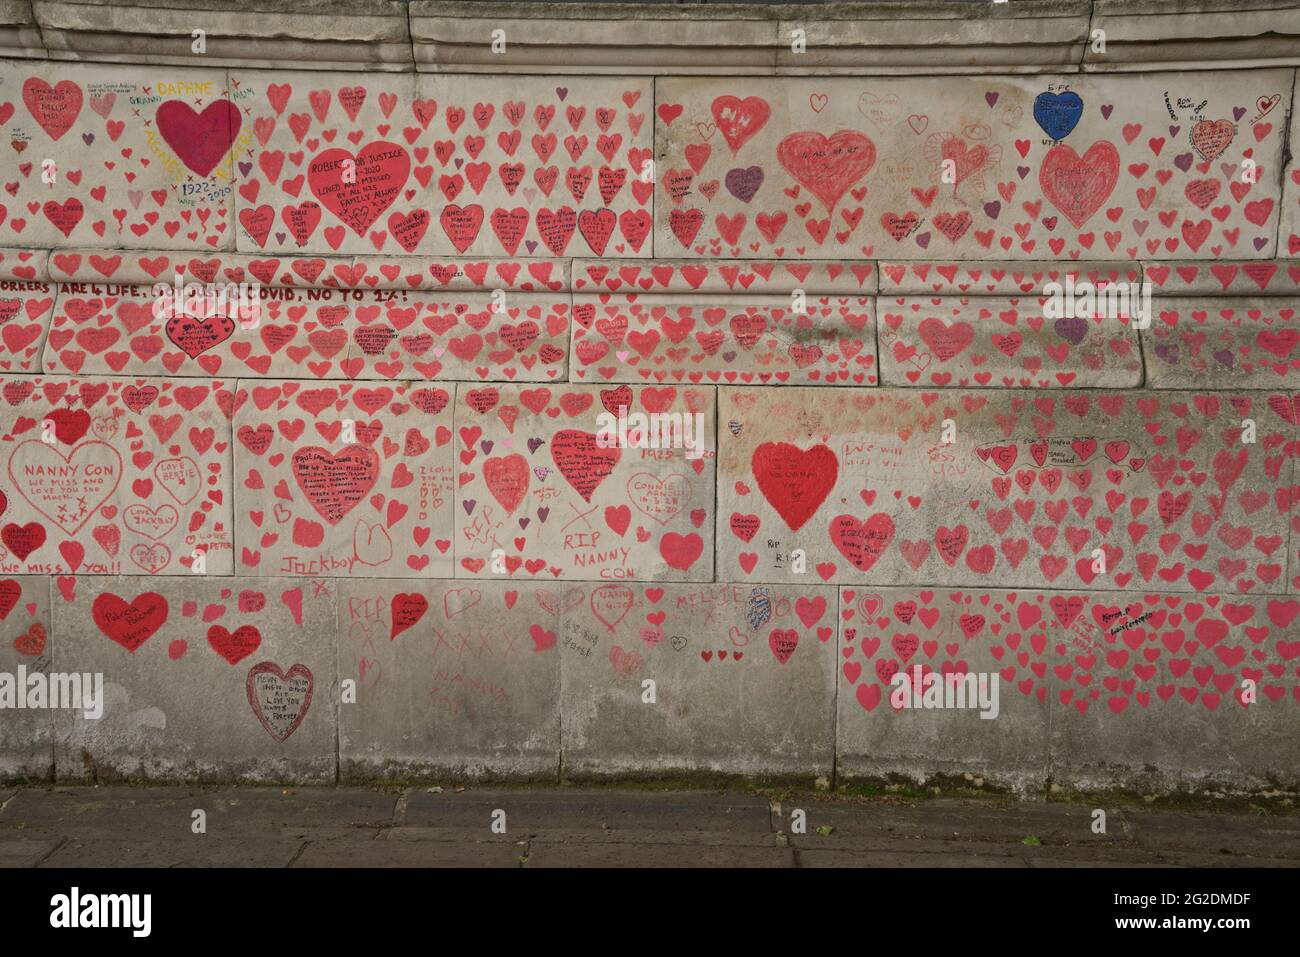 El National Covid Memorial Wall, un mural público pintado por voluntarios para conmemorar a las víctimas de la pandemia COVID-19 en el Reino Unido. Está en la orilla sur del río Támesis en Londres, frente al Palacio de Westminster, Londres, Inglaterra, Reino Unido. Foto de stock